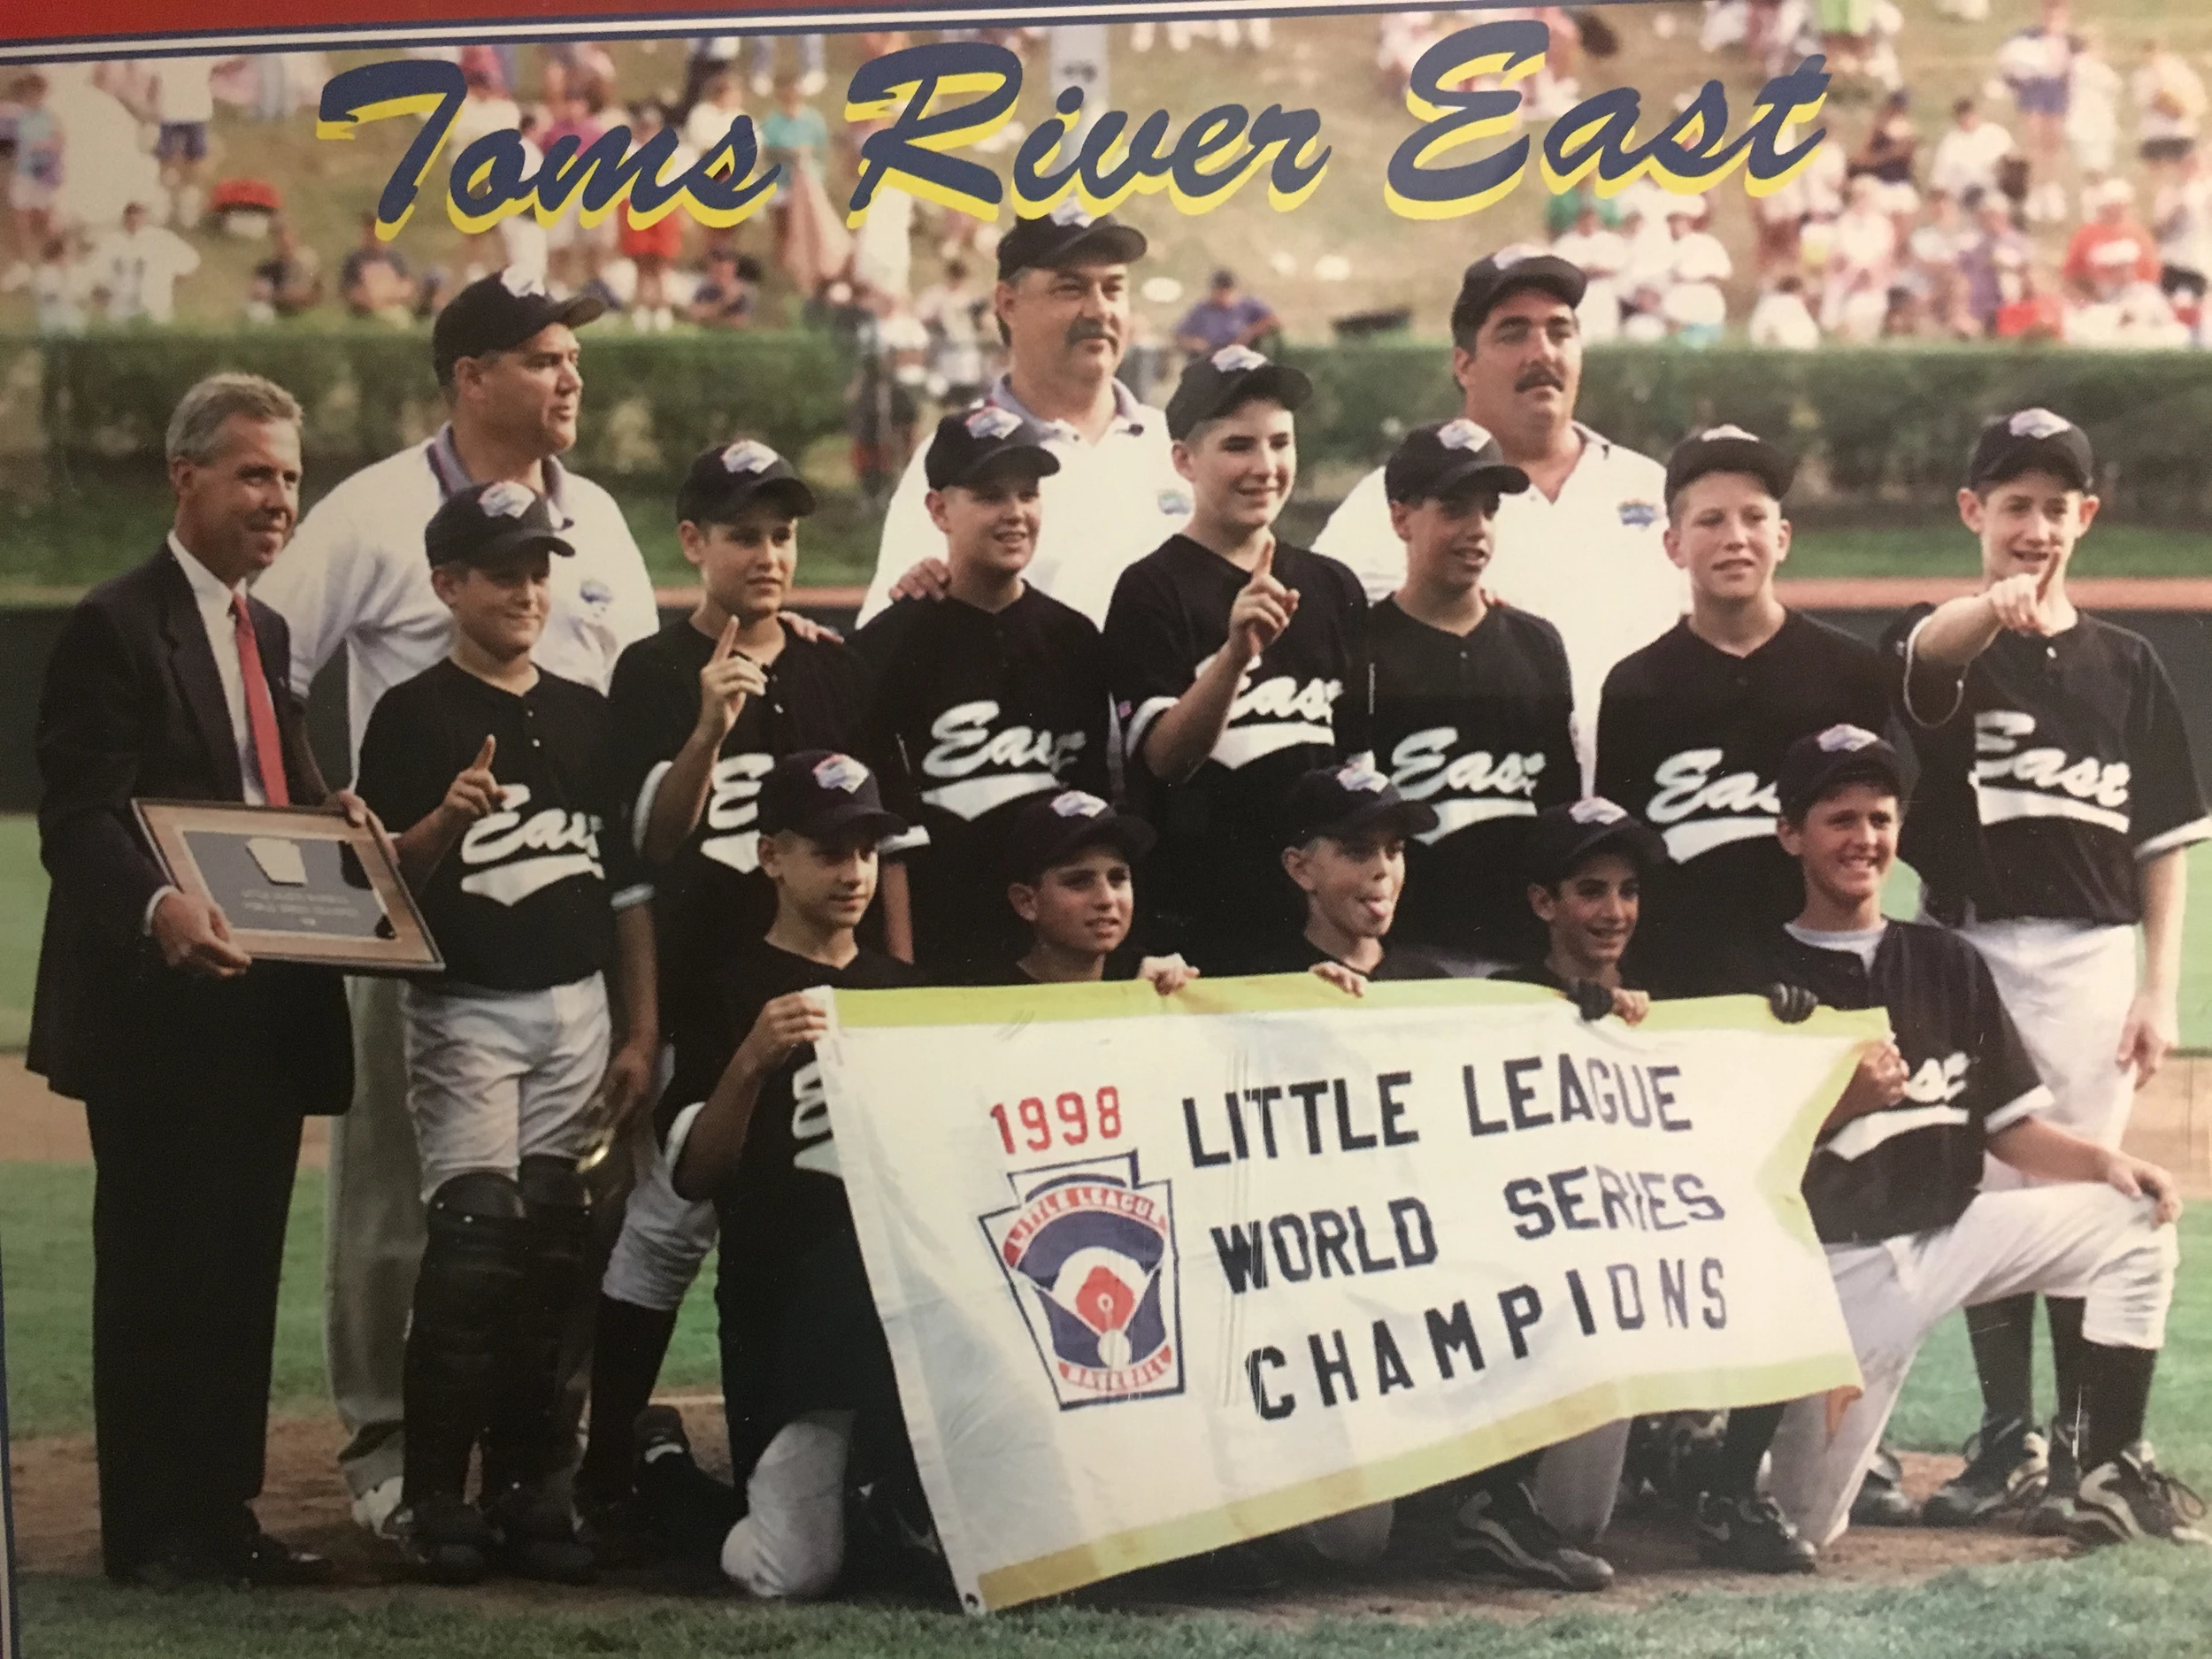 Little League World Series: Toms River East beats Connecticut